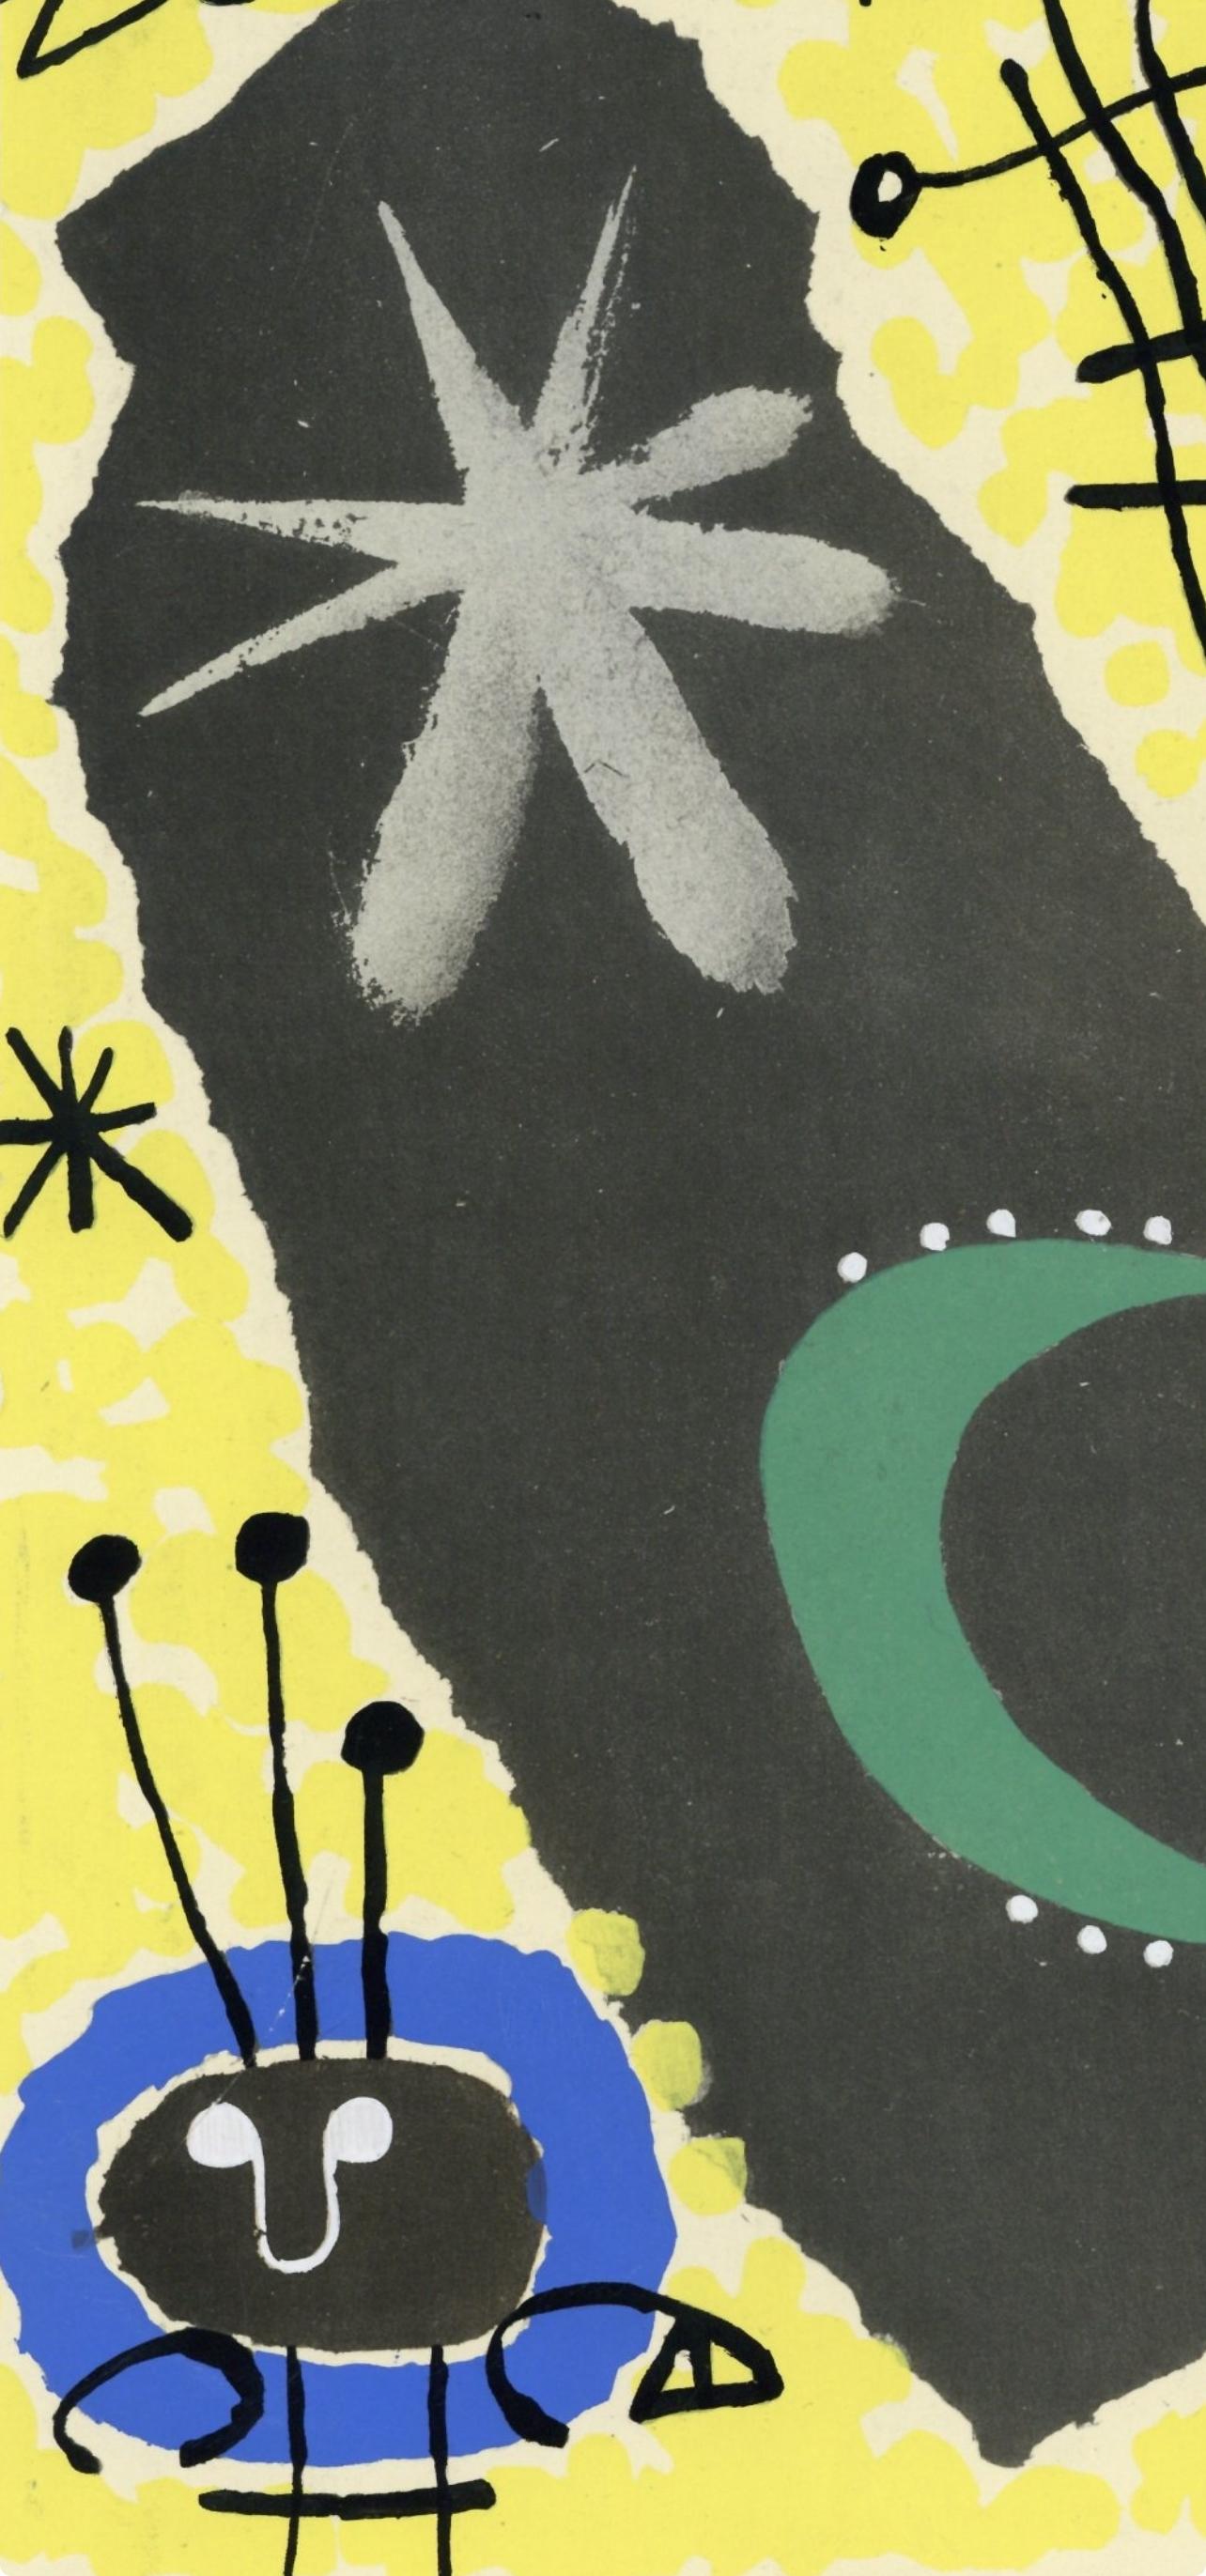 Miró, Papier collé, XXe Siècle (after) - Print by Joan Miró